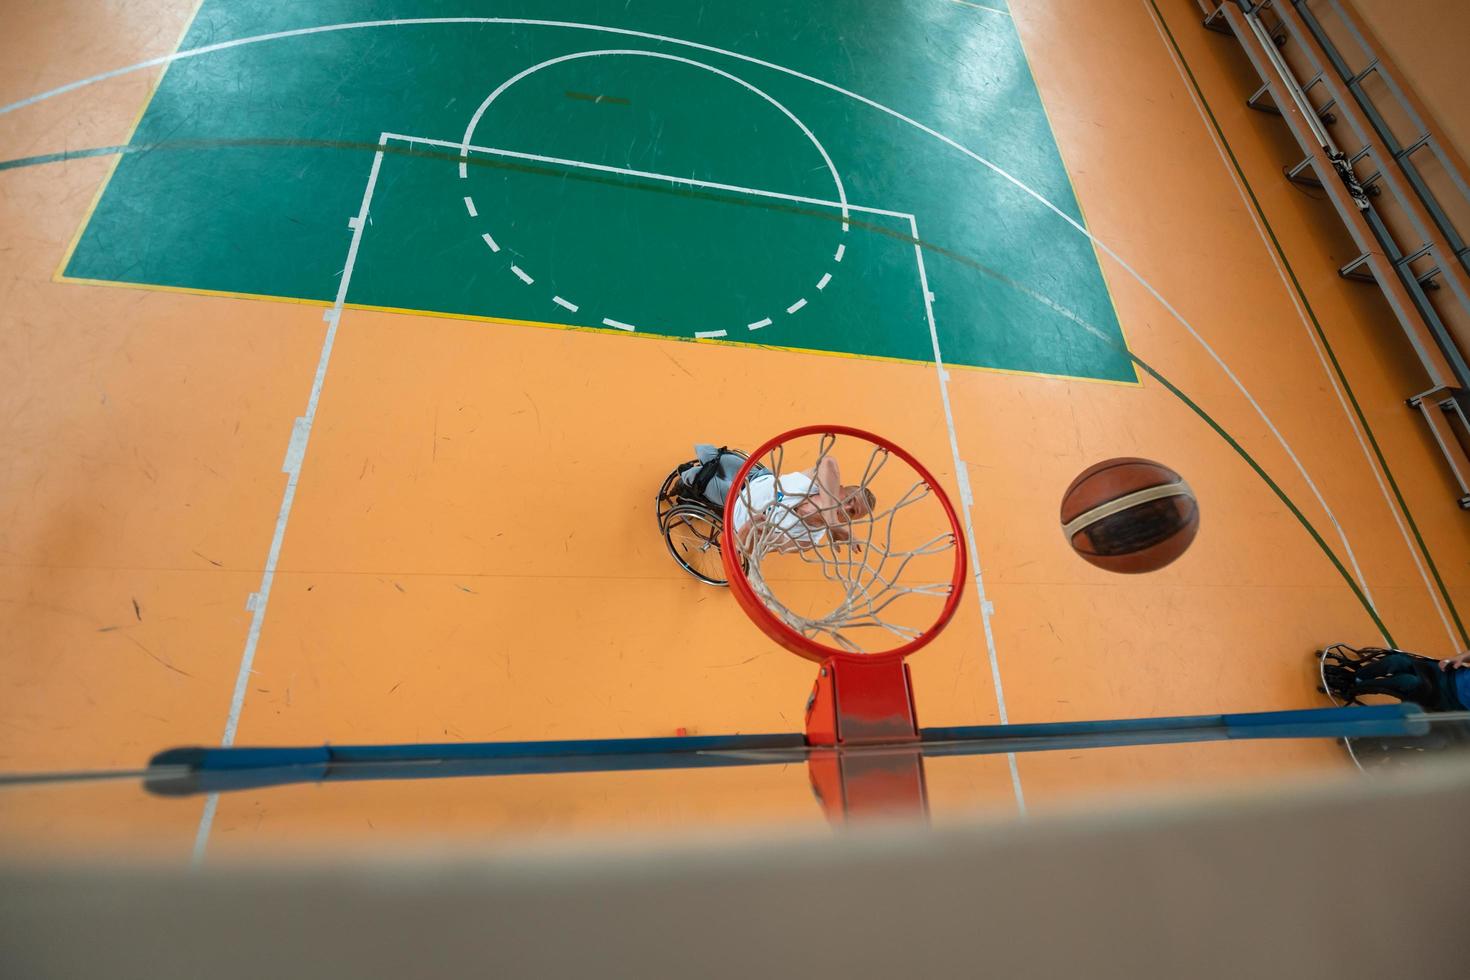 slepen visie foto van een oorlog veteraan spelen basketbal in een modern sport- arena. de concept van sport voor mensen met handicaps